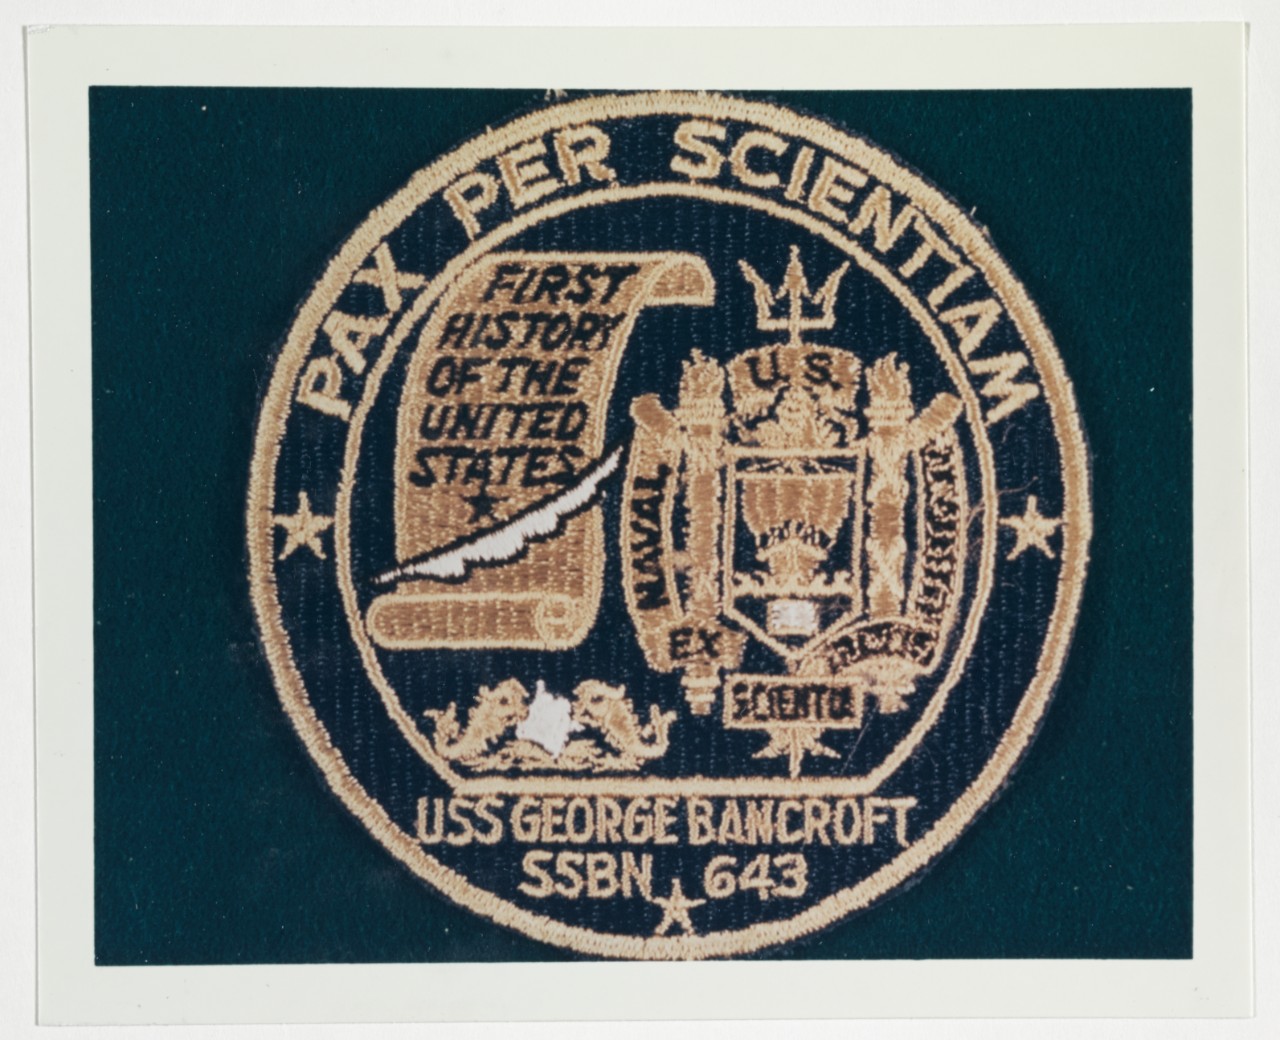 Insignia: USS GEORGE BANCROFT (SSBN-643)